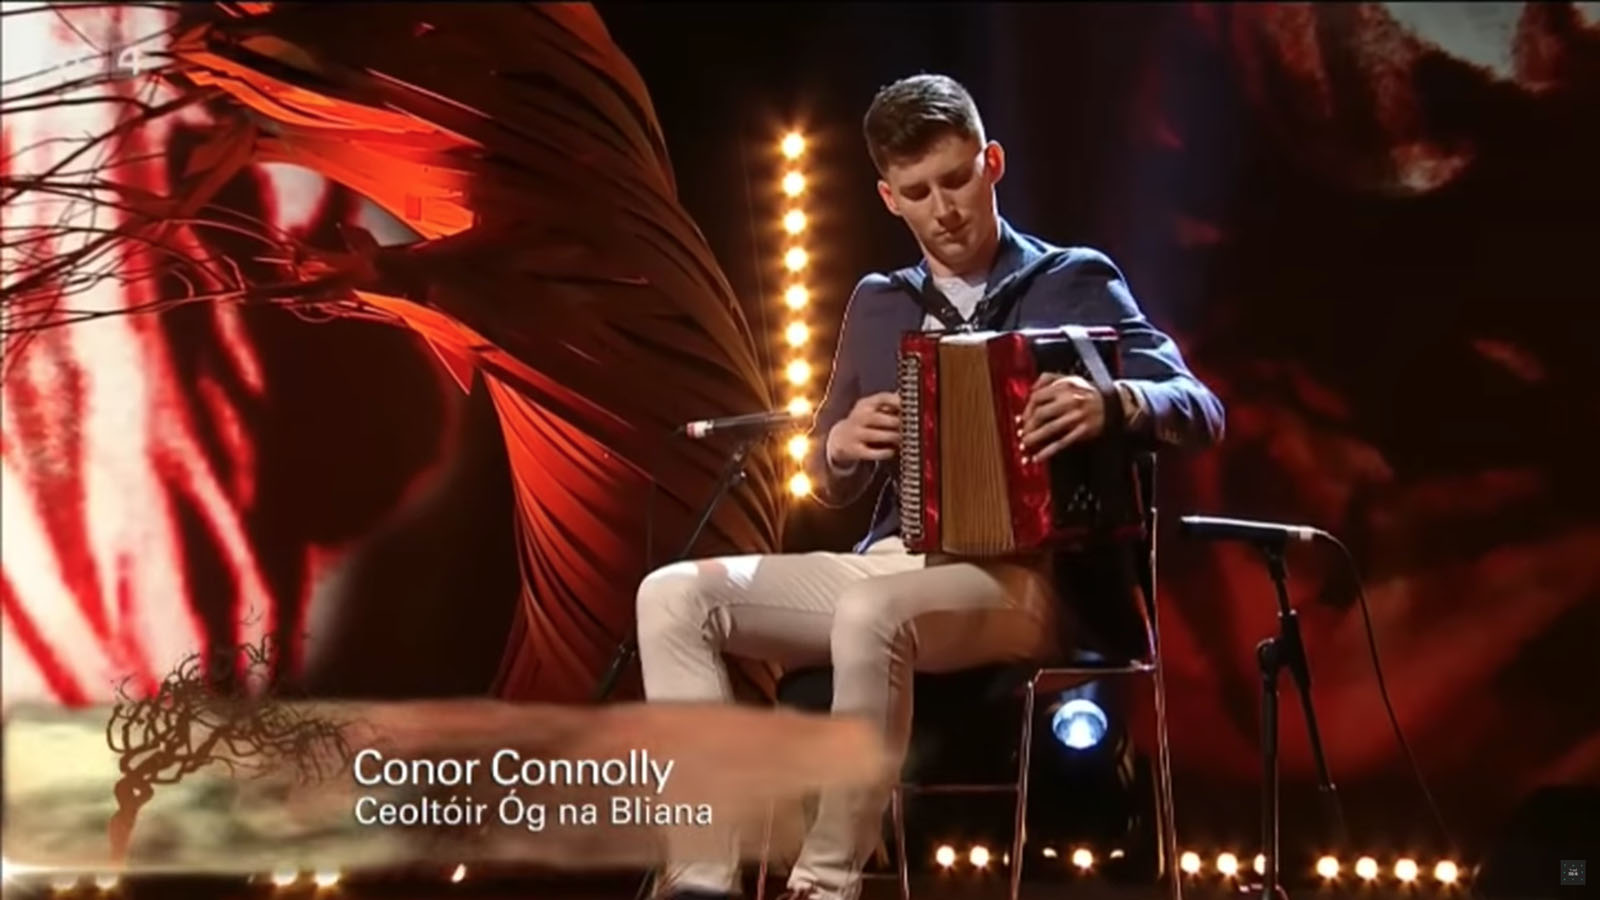 Conor Connolly